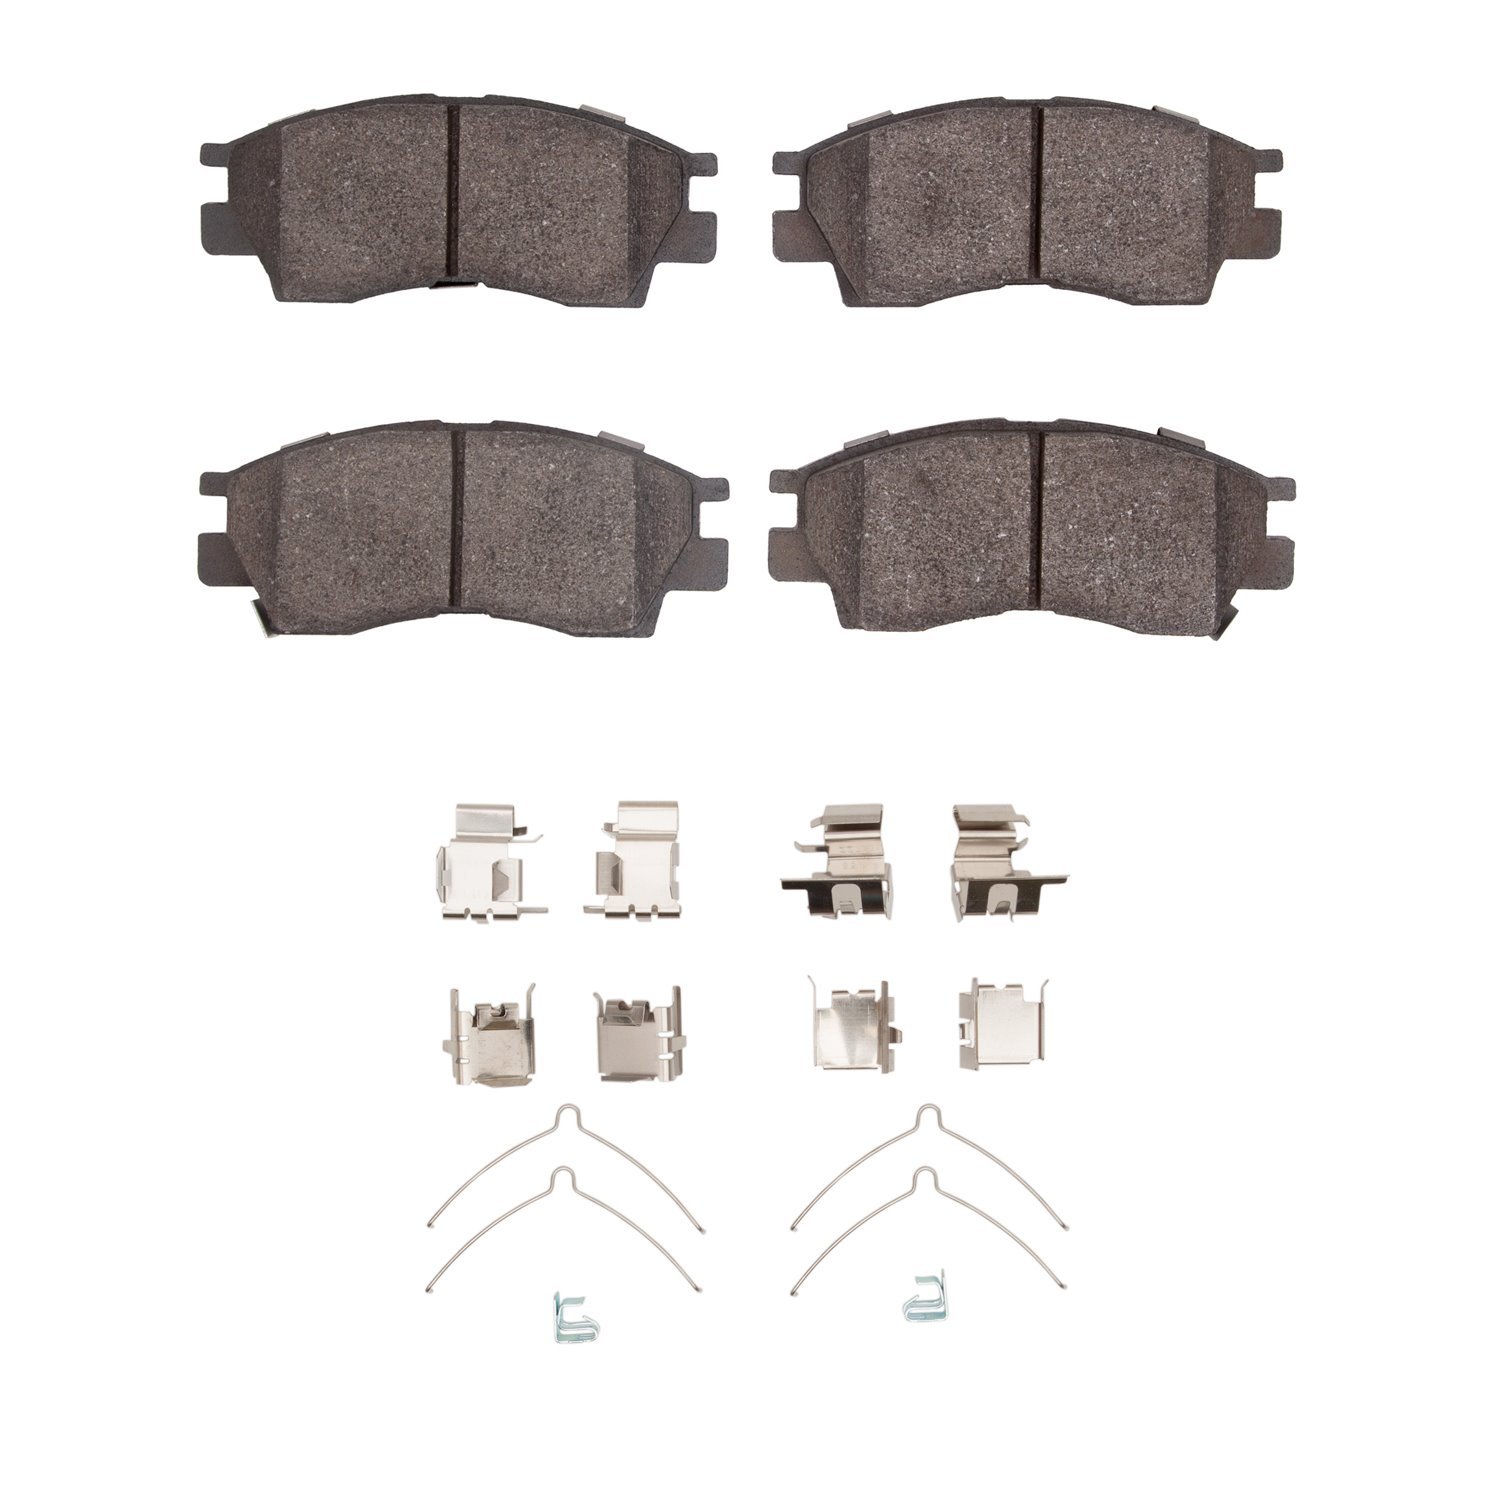 1310-0476-01 3000-Series Ceramic Brake Pads & Hardware Kit, 1995-2003 Lexus/Toyota/Scion, Position: Front